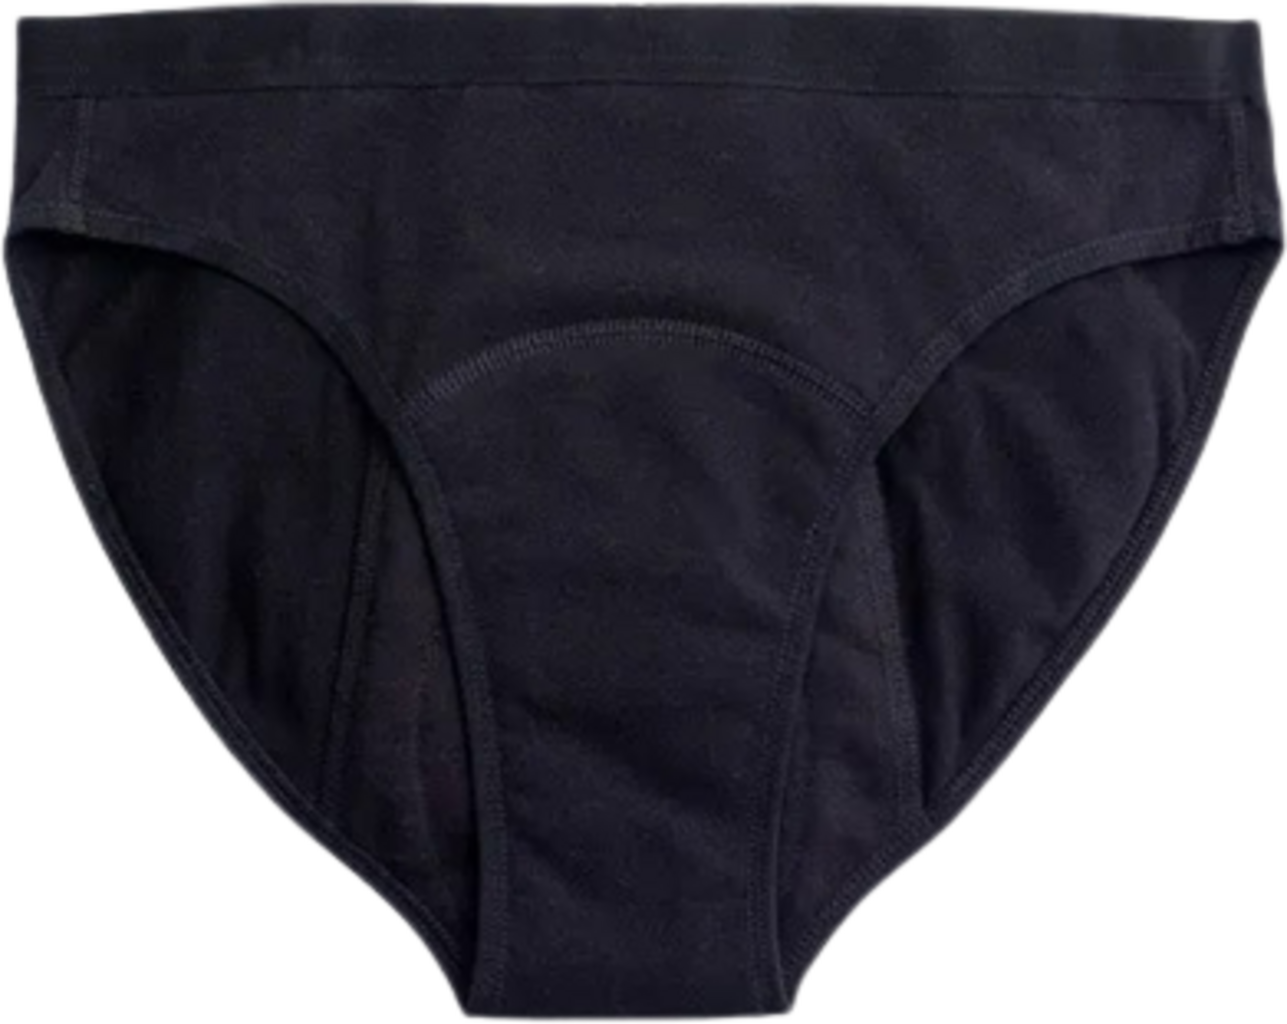 Imse Period Underwear Medium Flow - Black - Ecco Verde Online Shop